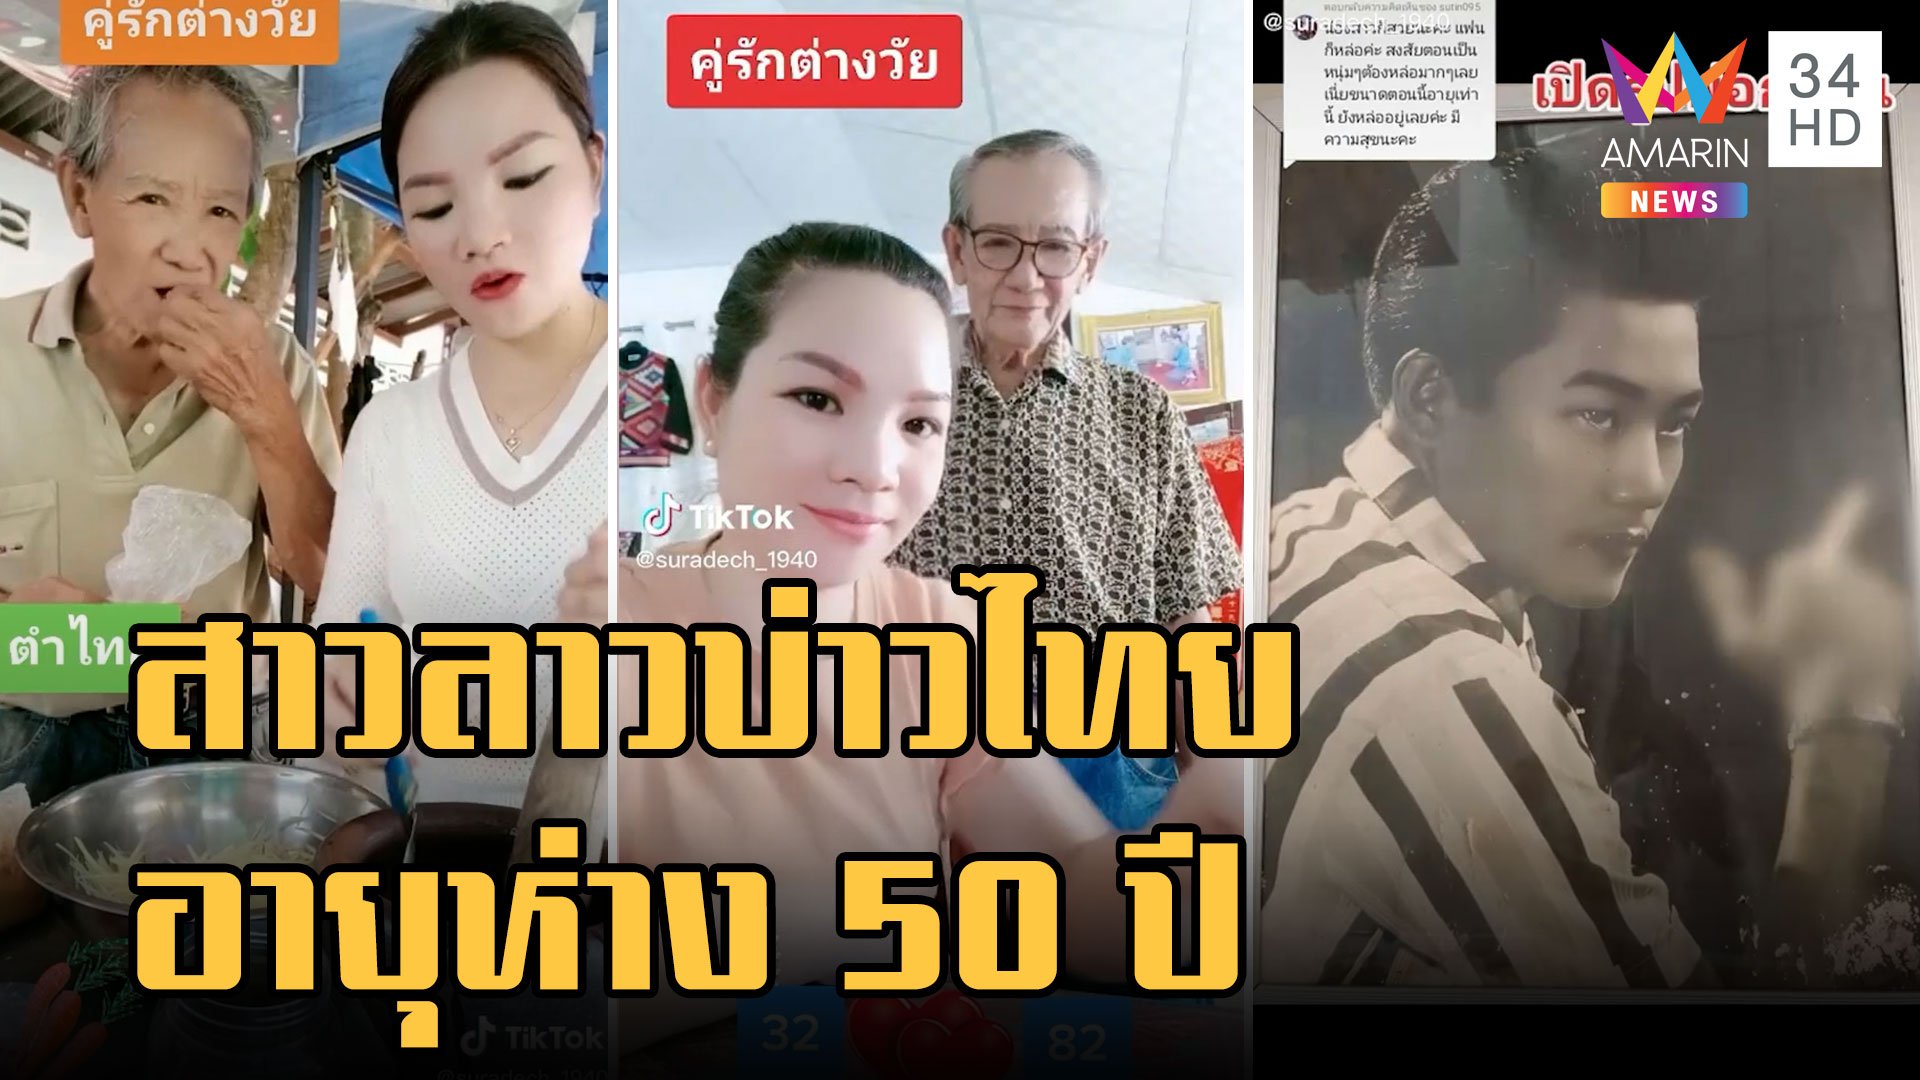 สาวลาวบ่าวไทย คู่รักต่างวัยอายุห่าง 50 ปี คบนาน 17 ปีแล้ว | ข่าวอรุณอมรินทร์ | 25 พ.ย. 65 | AMARIN TVHD34